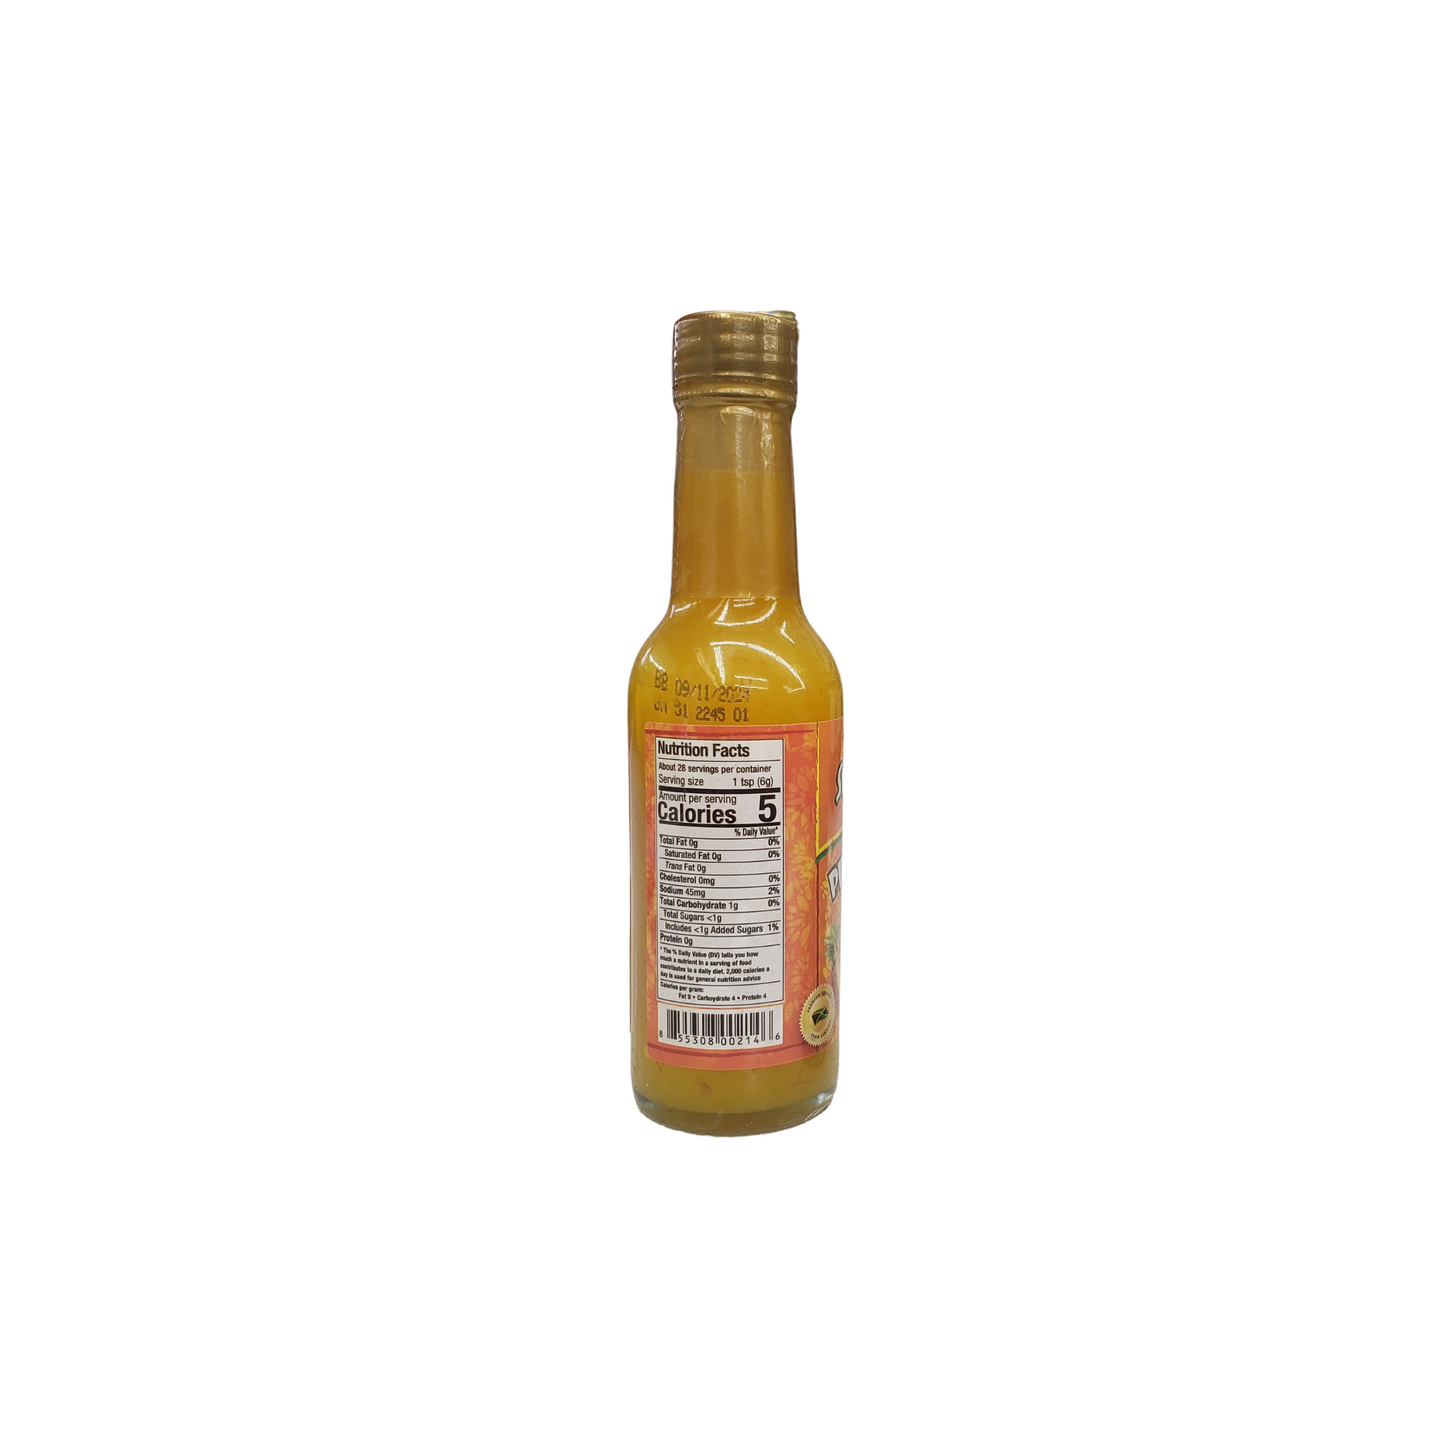 Spur Tree Pineapple Scotch Bonnet Pepper Sauce - Net weight 148ml